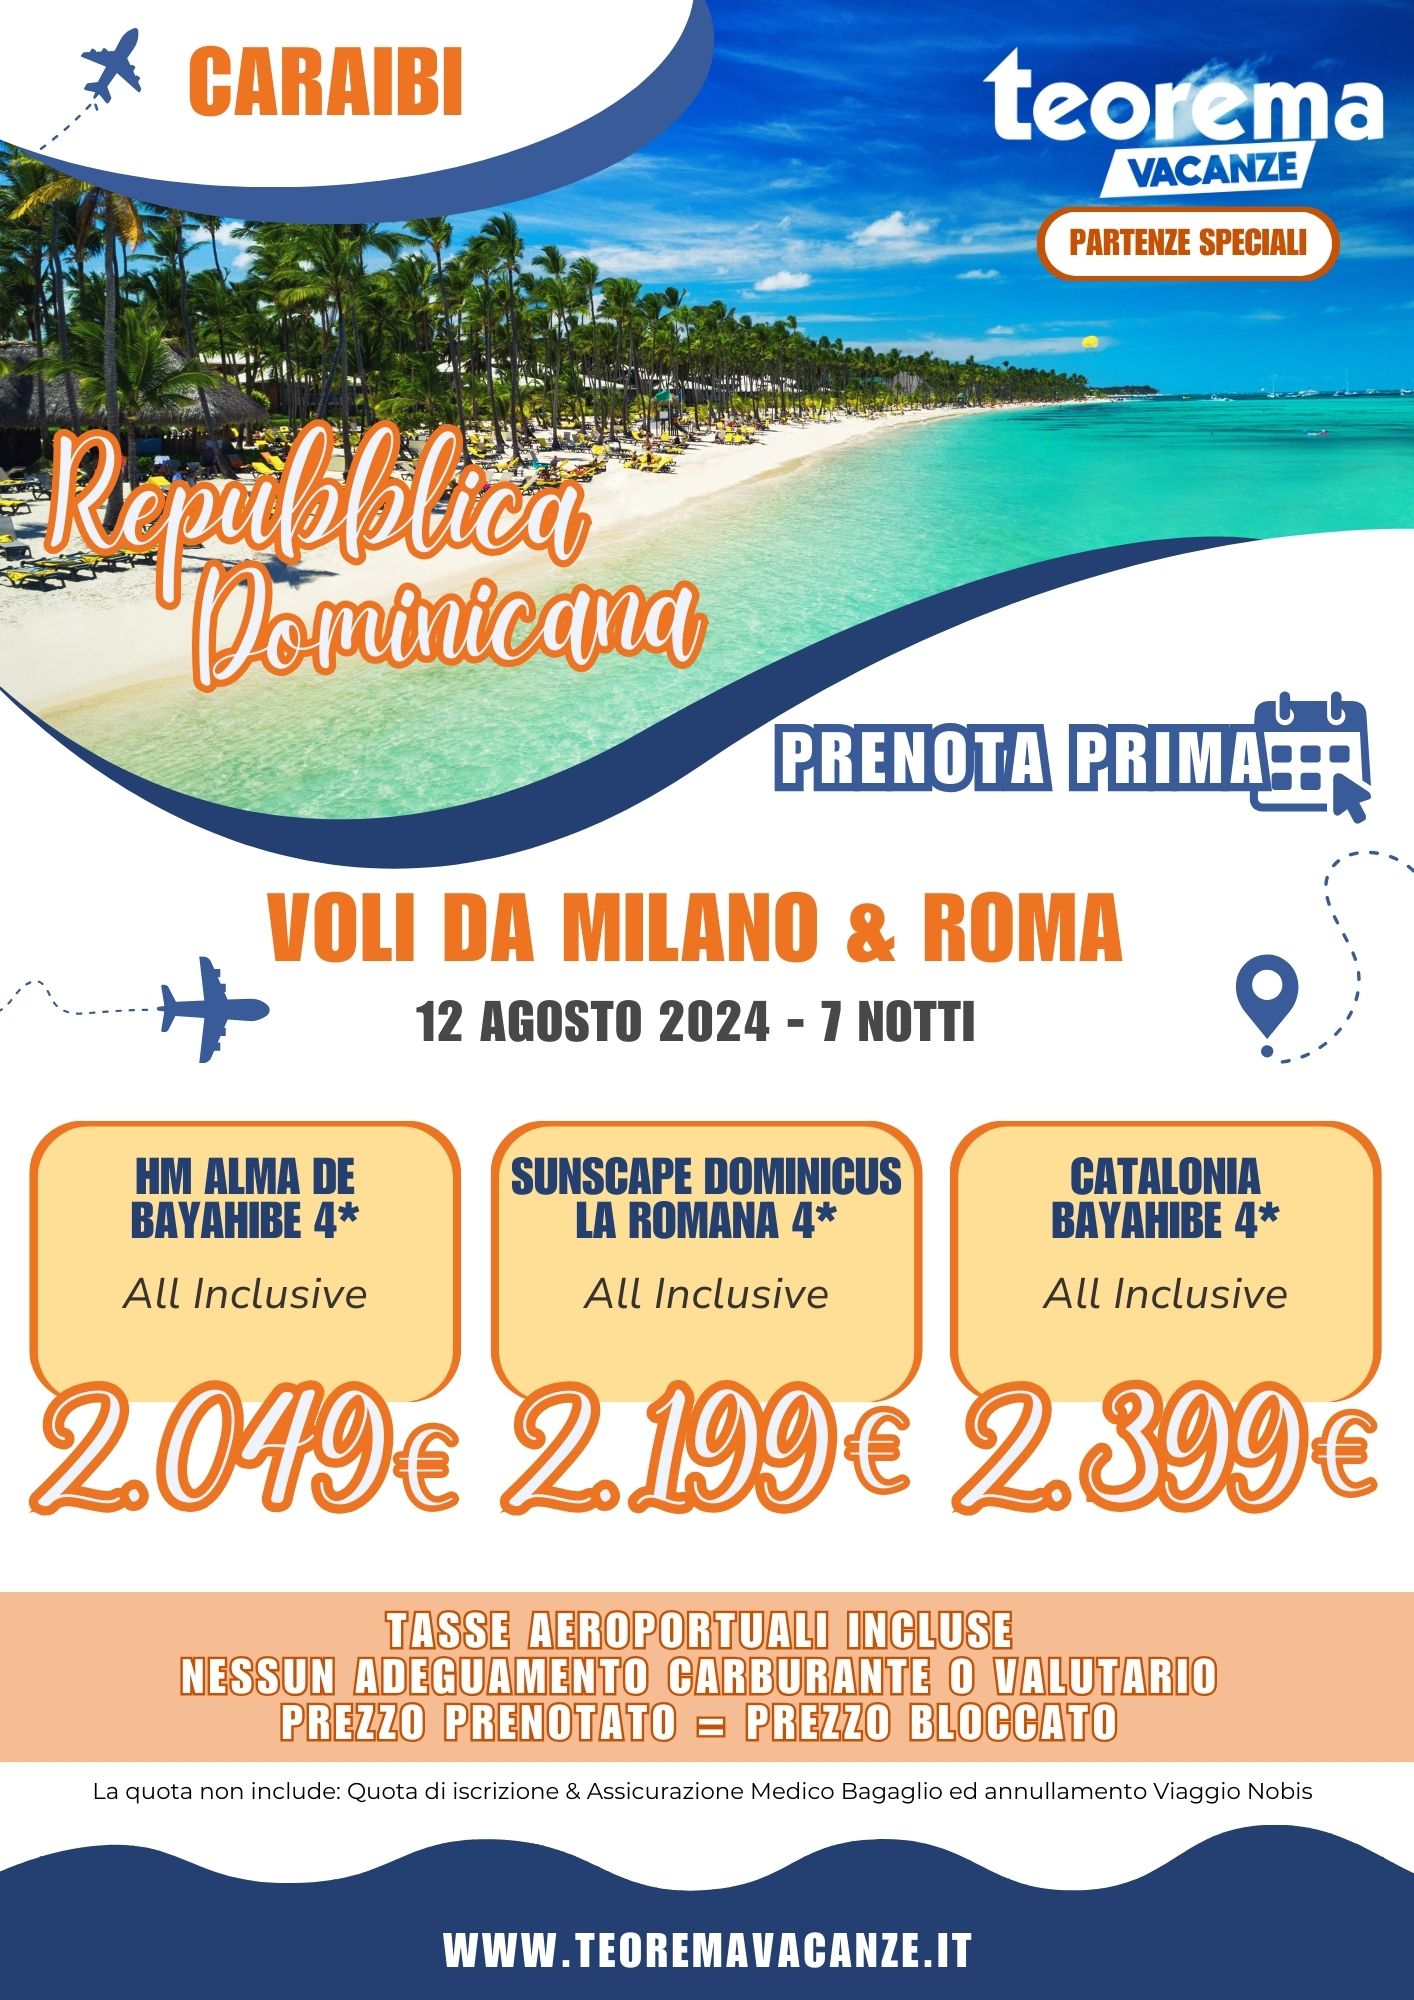 TEOREMA SUMMER 2024 - REPUBBLICA DOMINICANA DA MILANO E ROMA - 12 AGOSTO